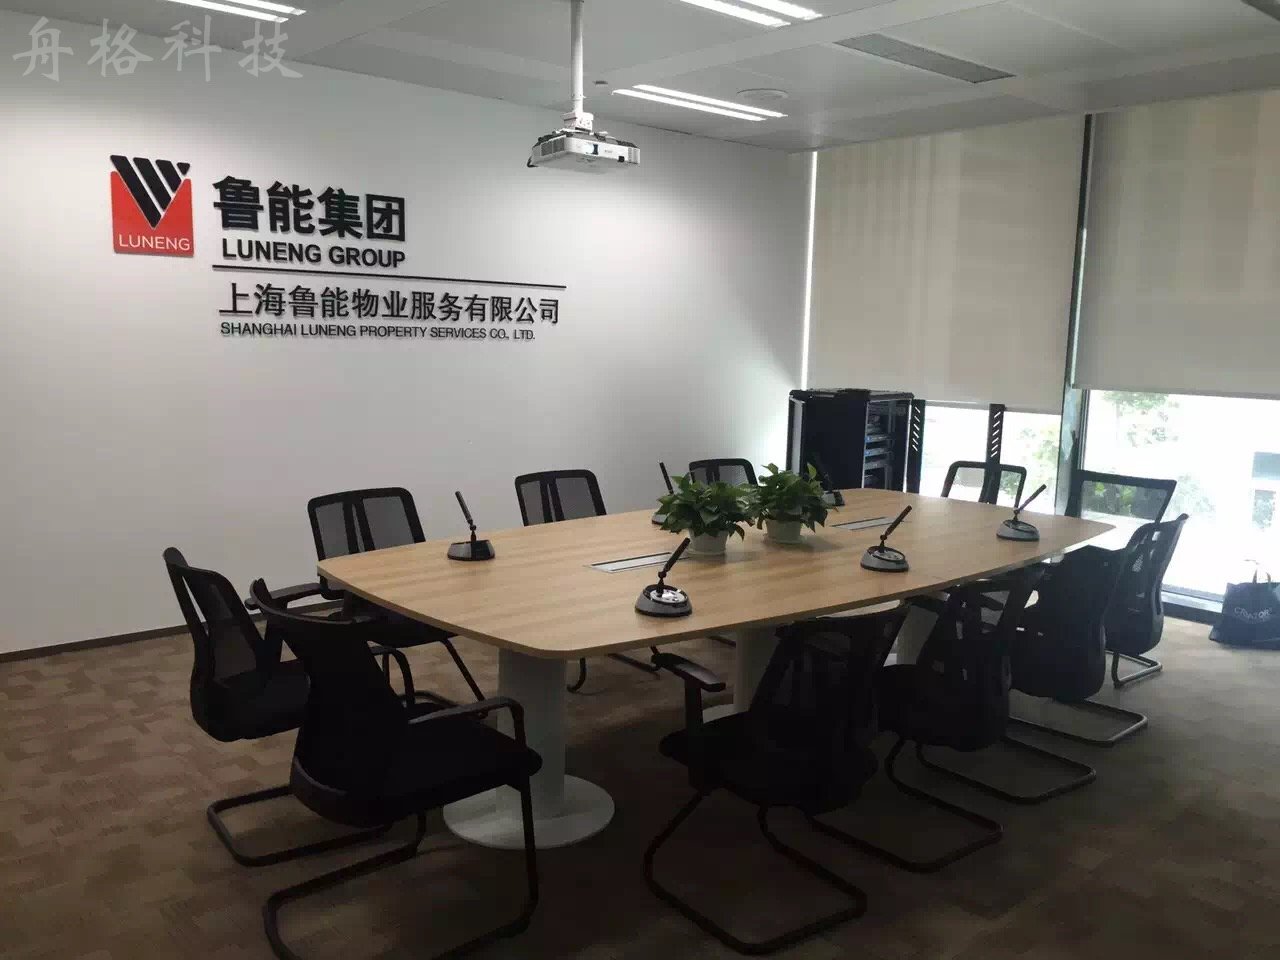 上海某国企多媒体会议室项目实施完毕